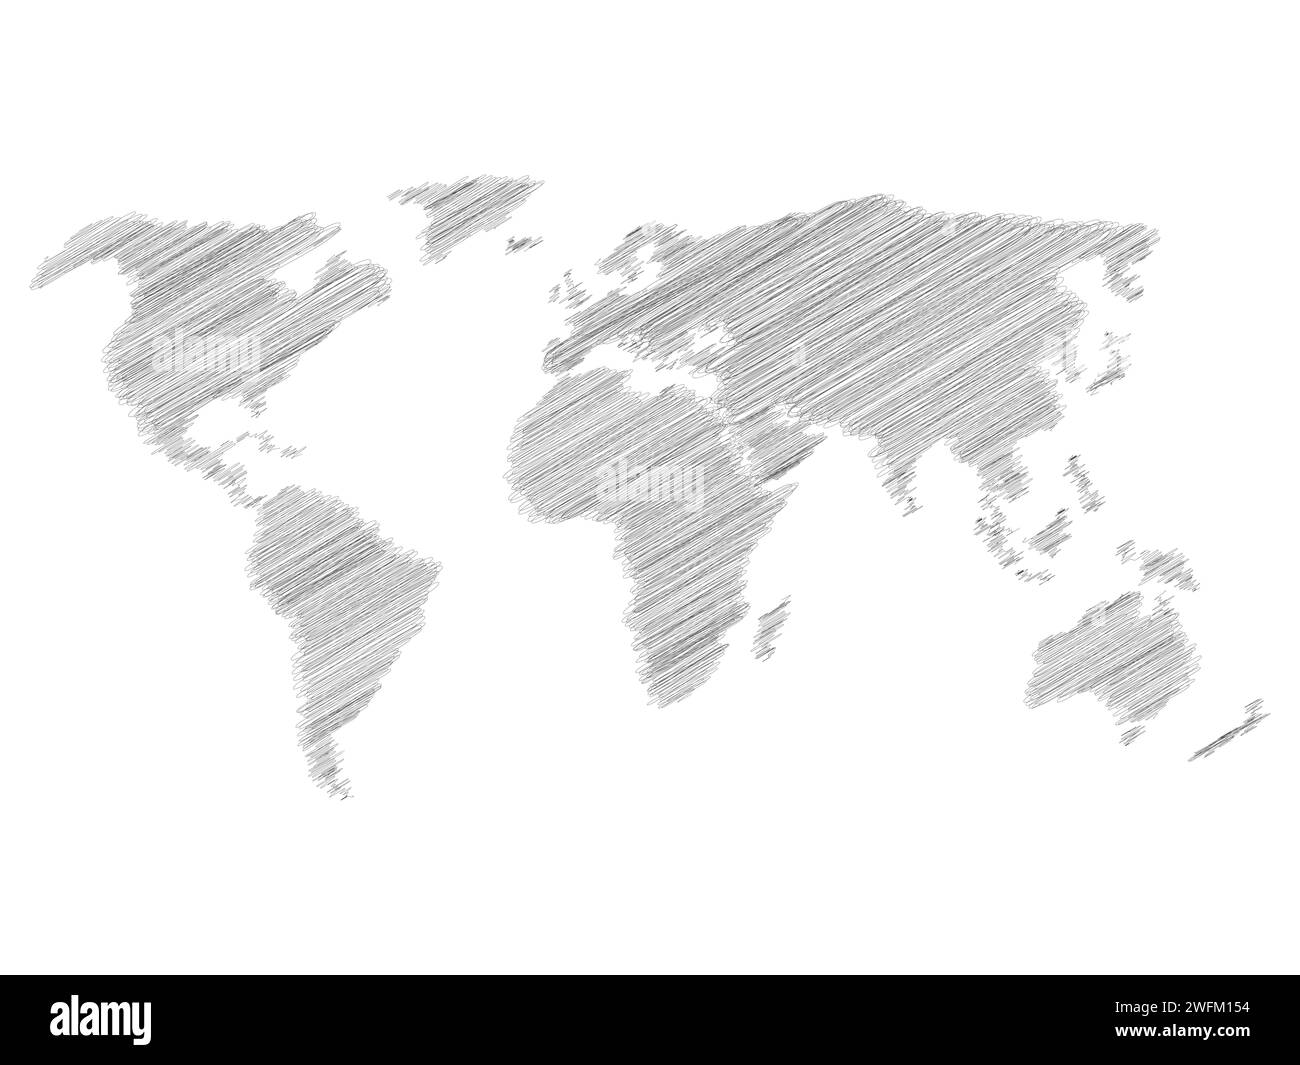 Plan d'esquisse de gribouillage au crayon de World. Dessin de la main. Illustration vectorielle grise sur fond blanc. Illustration de Vecteur